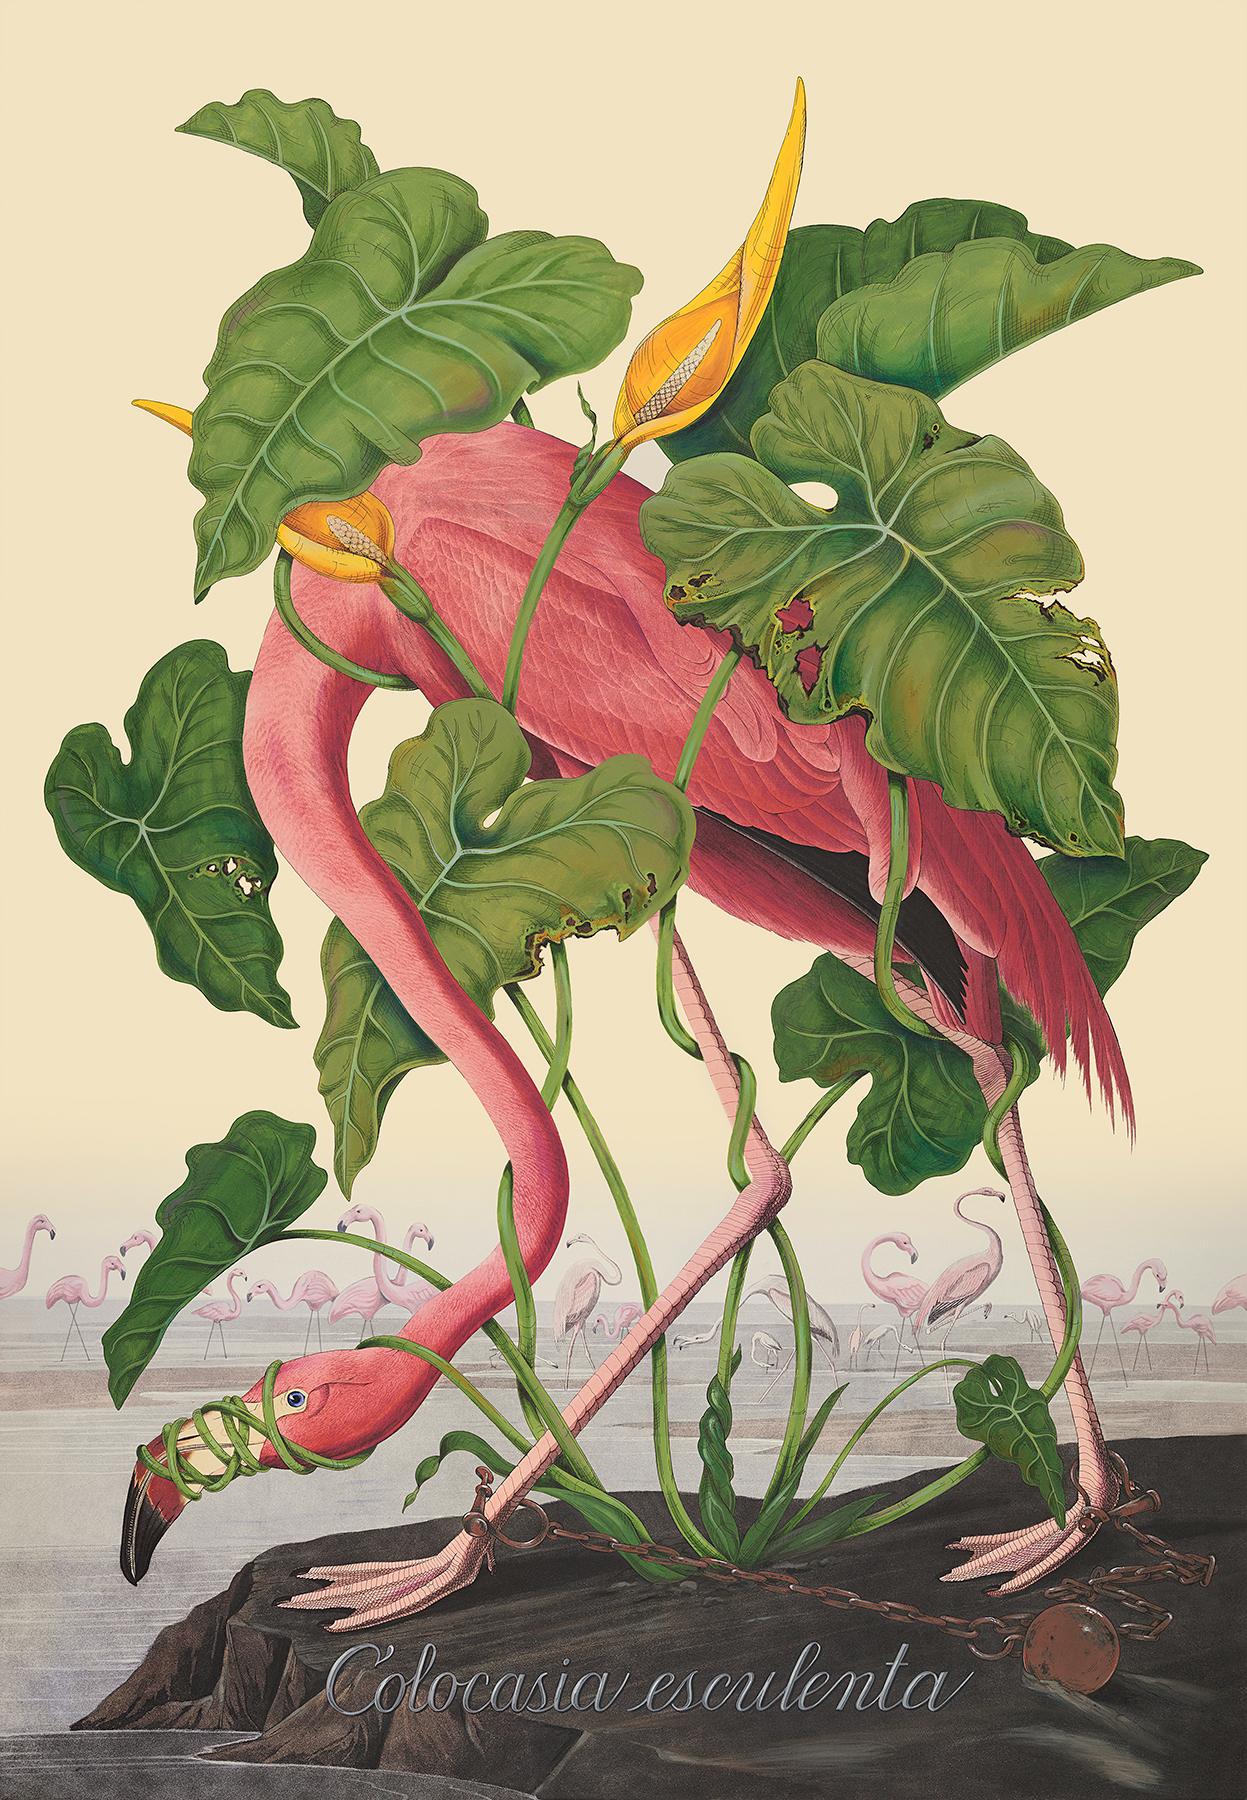 Penelope Gottlieb Animal Painting - Colocasia esculenta